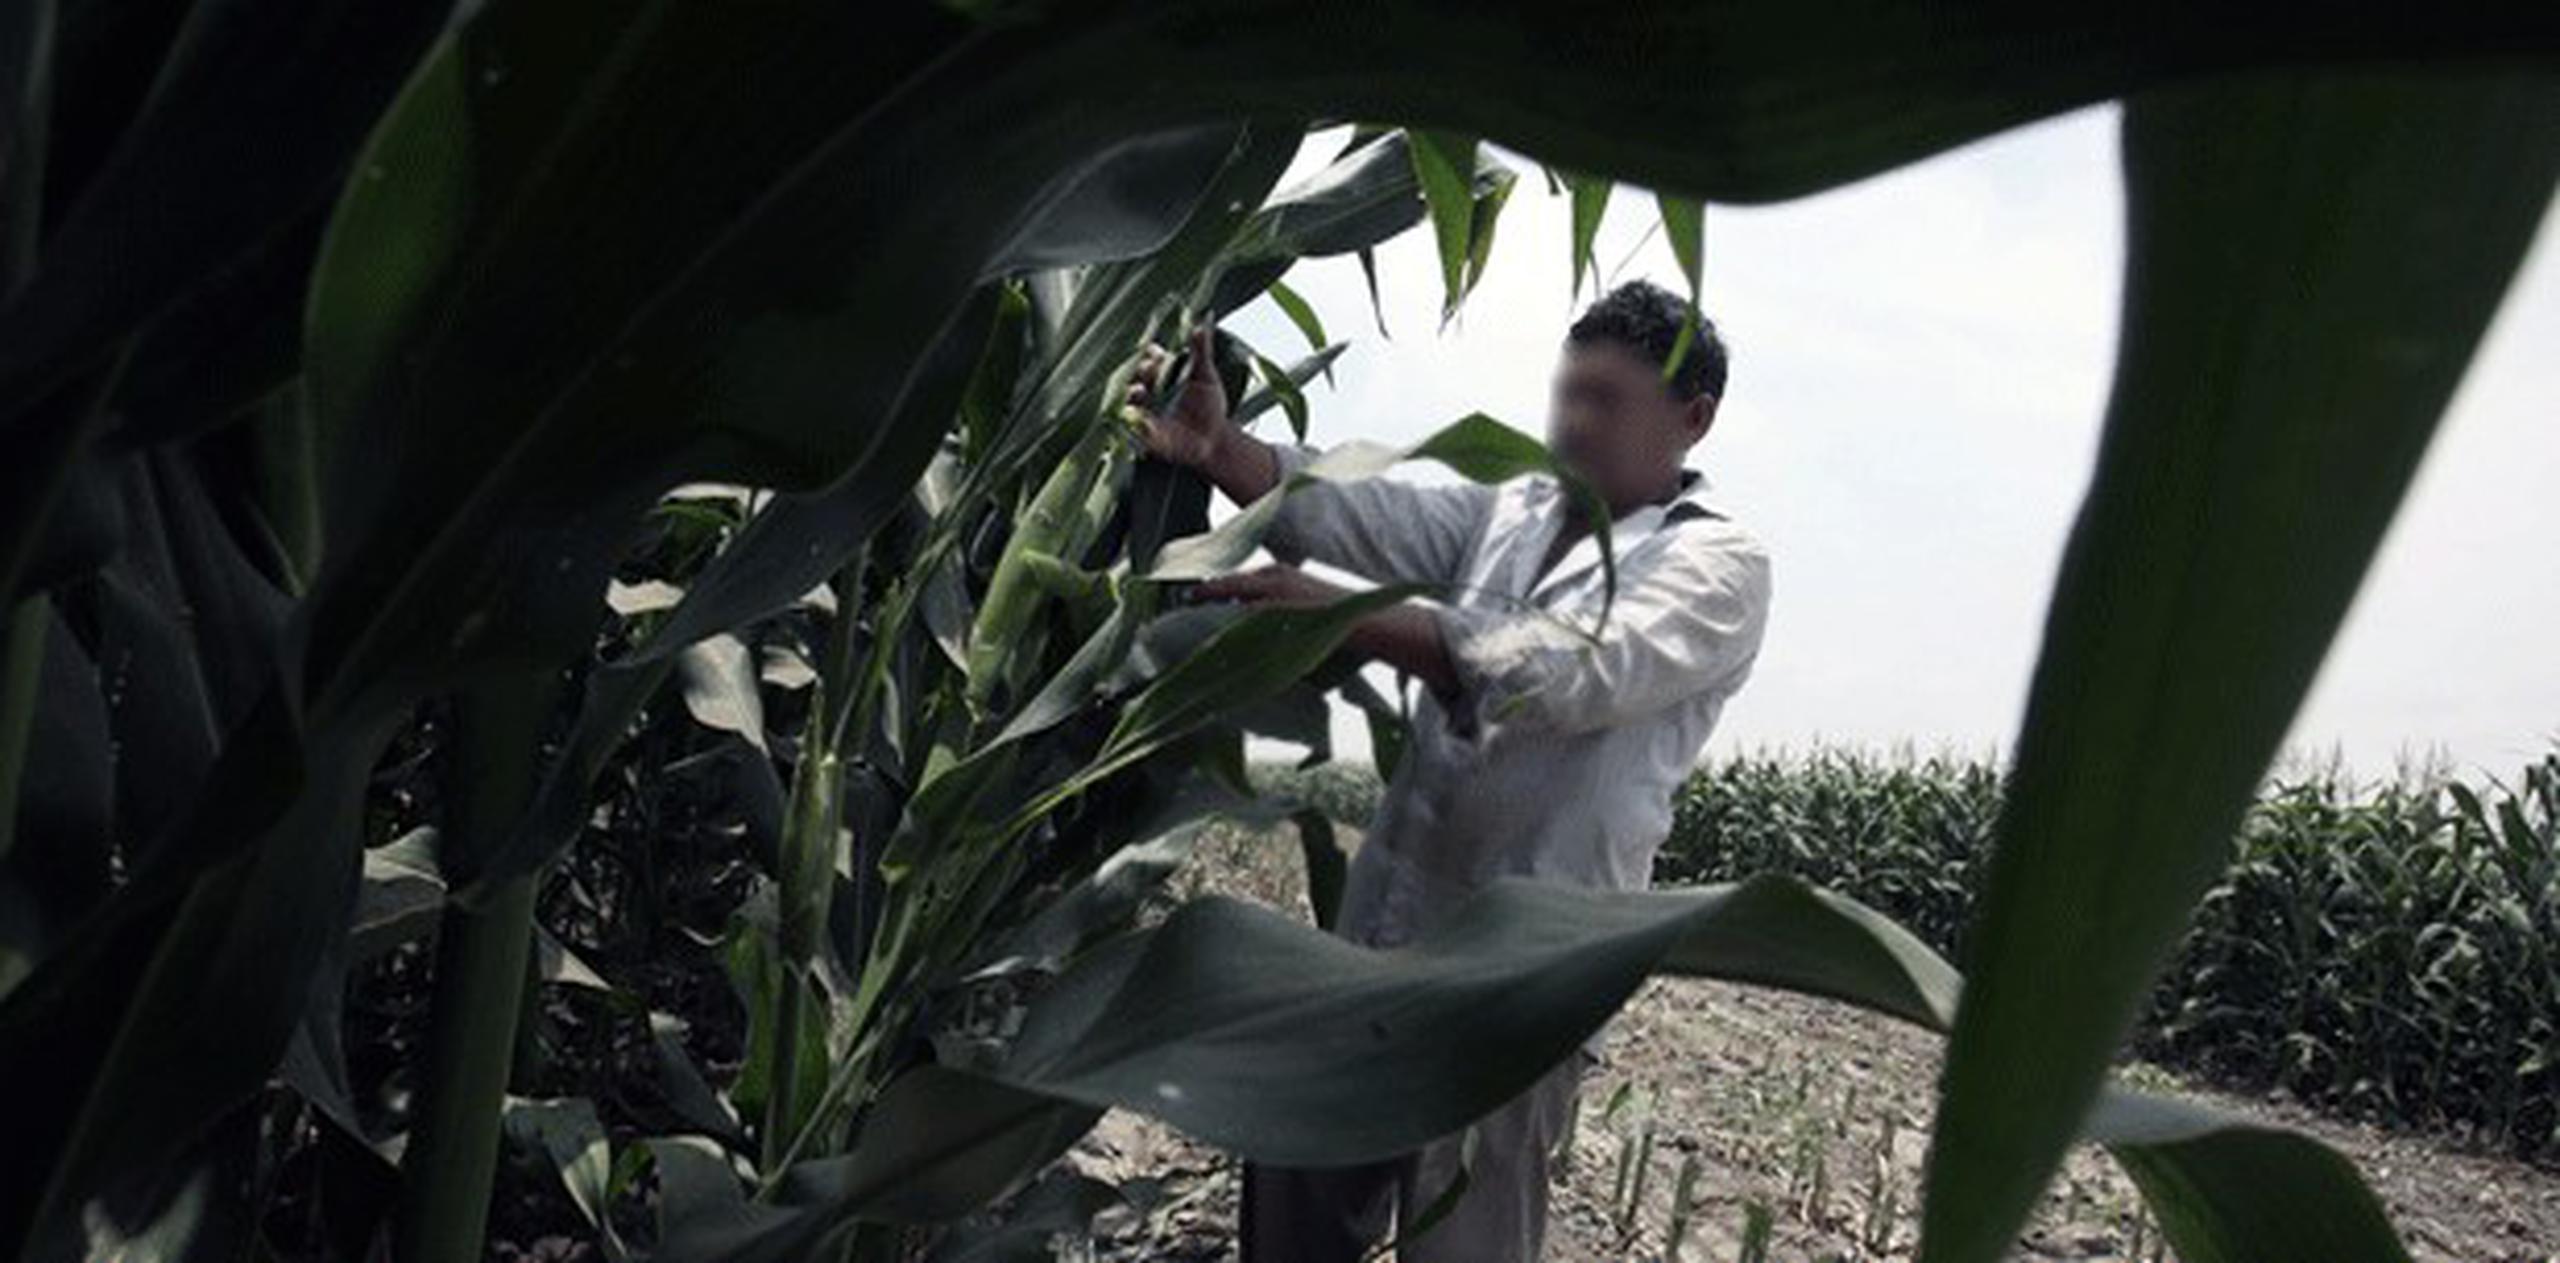 Programa por Comida Justa apunta a terminar con la explotación y el abuso de los trabajadores agrícolas en Estados Unidos. (Archivo)